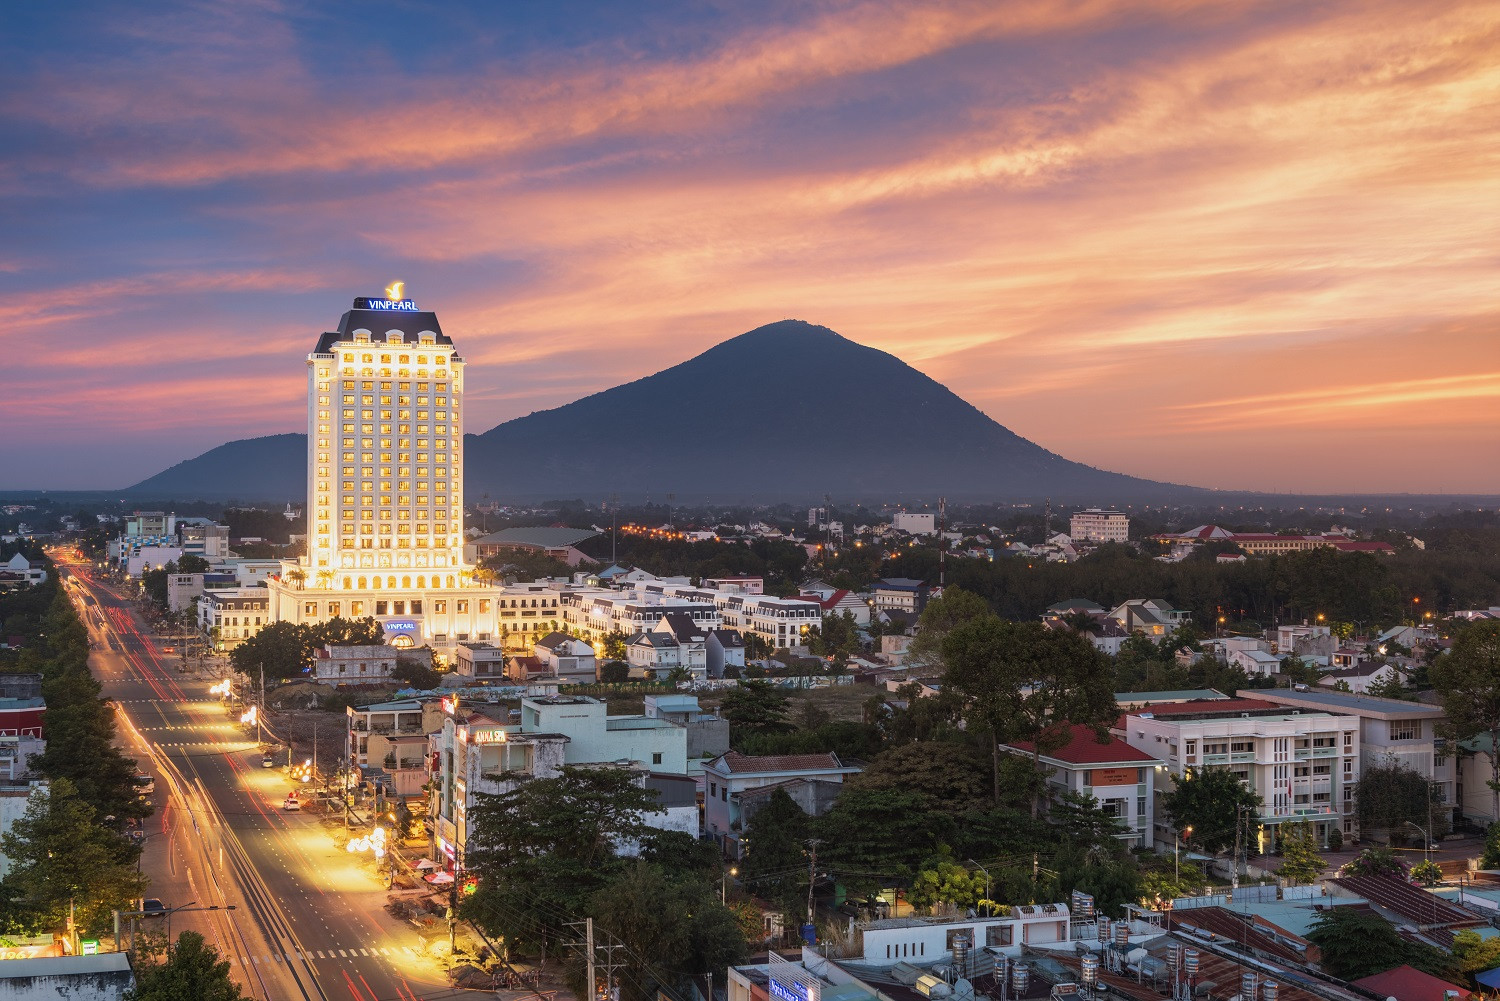 Tòa tháp Vinpearl Hotel Tây Ninh cao 21 xác lập tầng cao kỷ lục cho thành phố biên giới, tự hào trở thành một điểm dừng chân lý tưởng của du khách